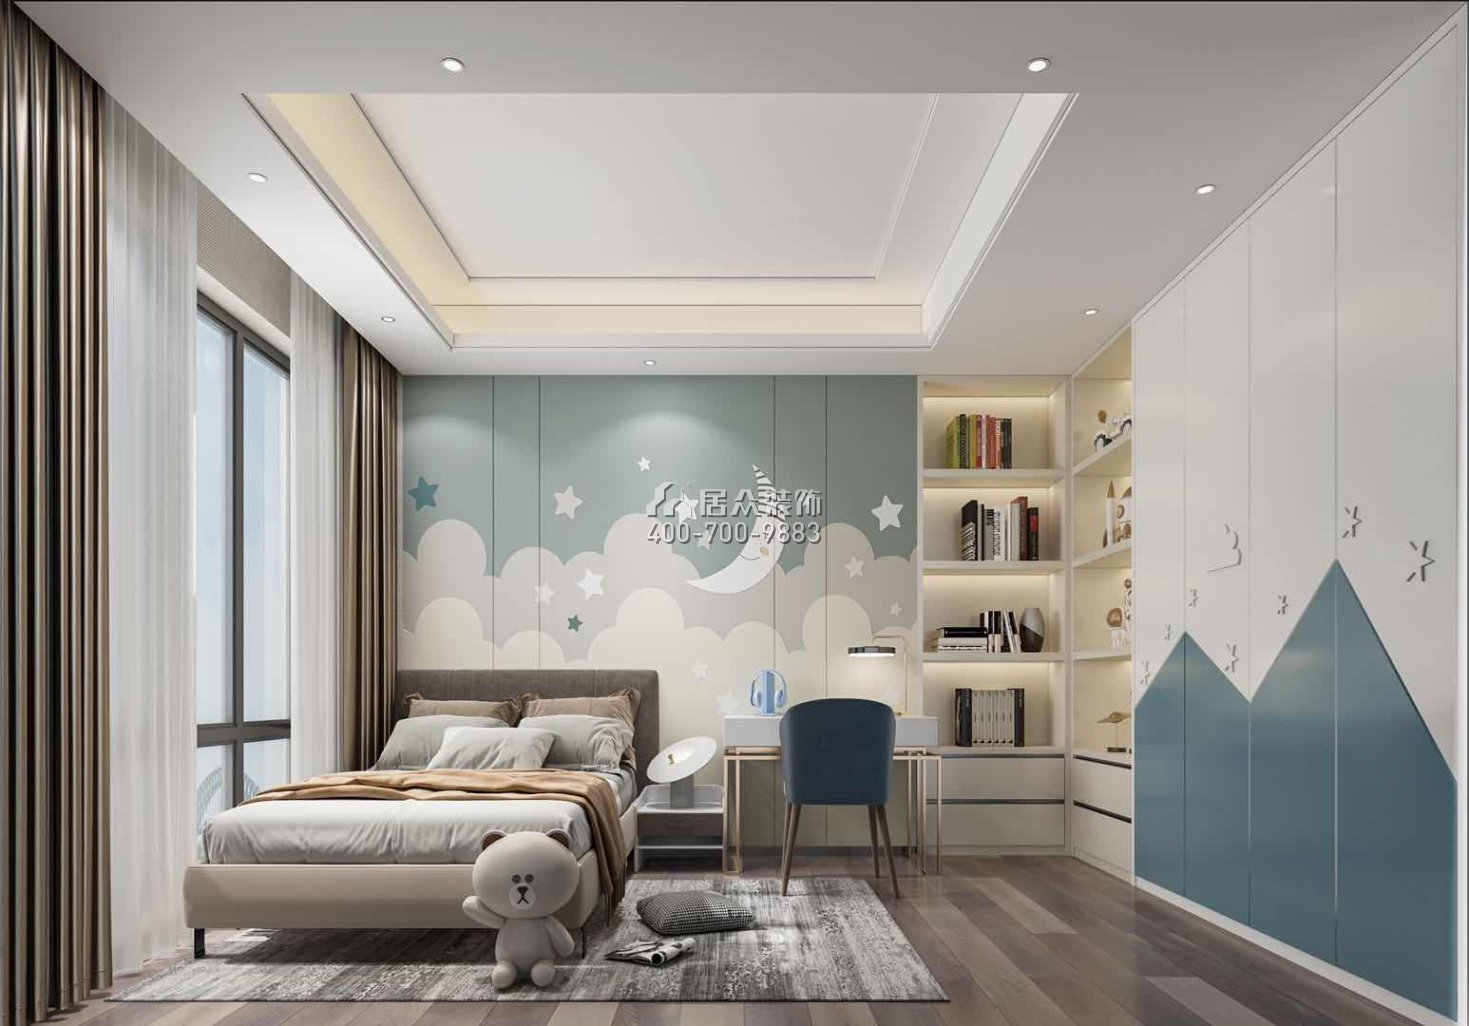 栖棠映山240平方米中式风格平层户型卧室装修效果图